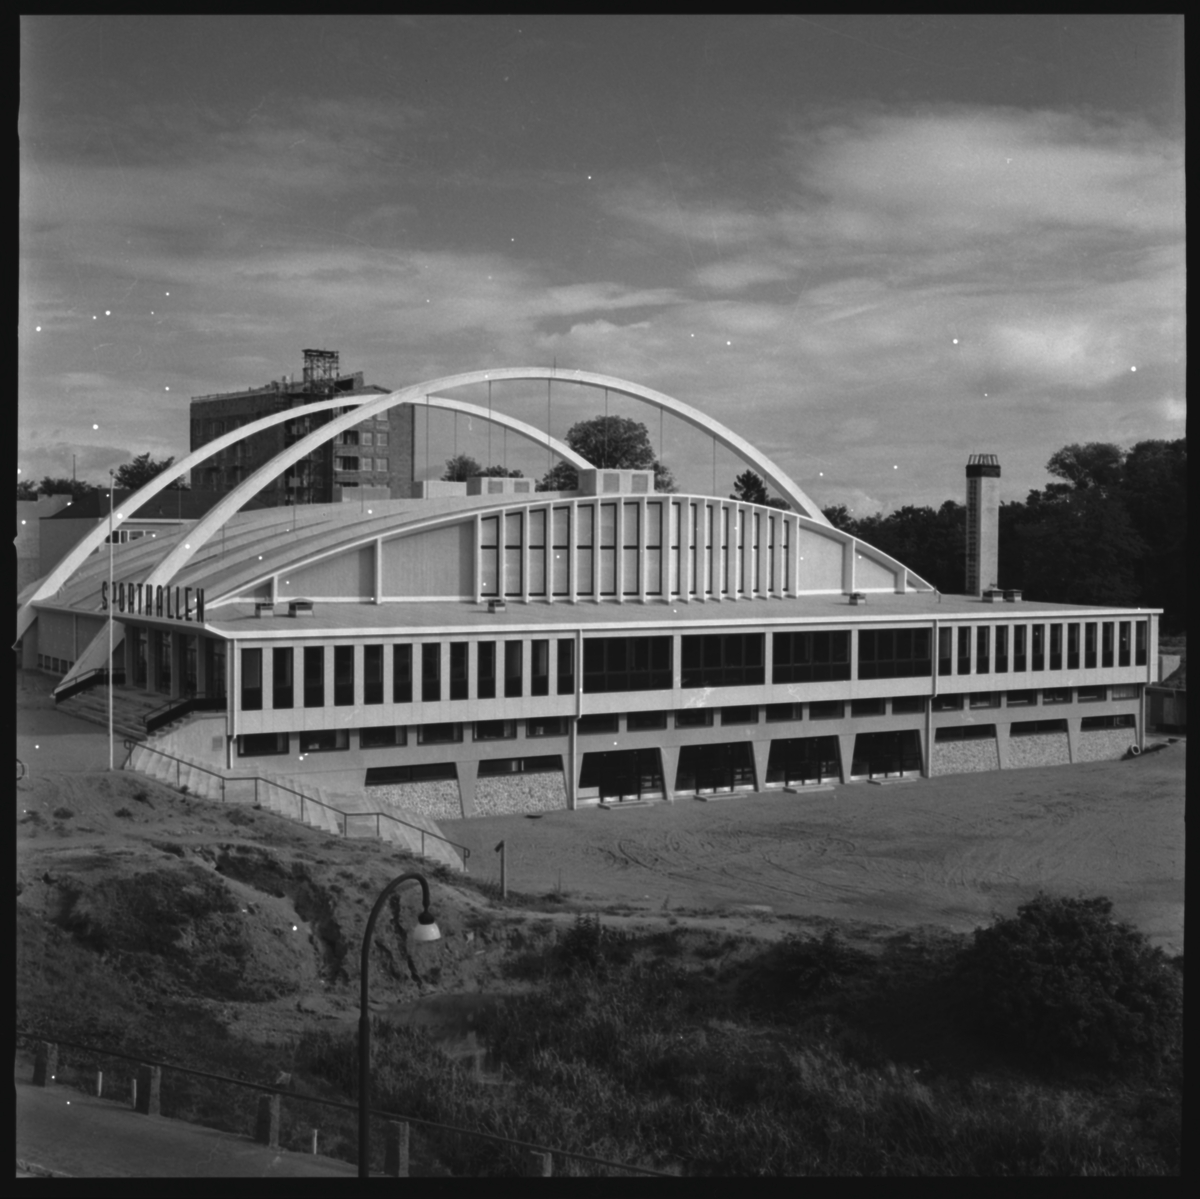 Sporthallen står färdig. Planering av omgivningen pågår.
Sporthallen är en modernistisk och konstruktivistisk byggnad. Den uppfördes 1955-56, arkitekt Hans Westman. Invigningen var den 6 oktober 1956.